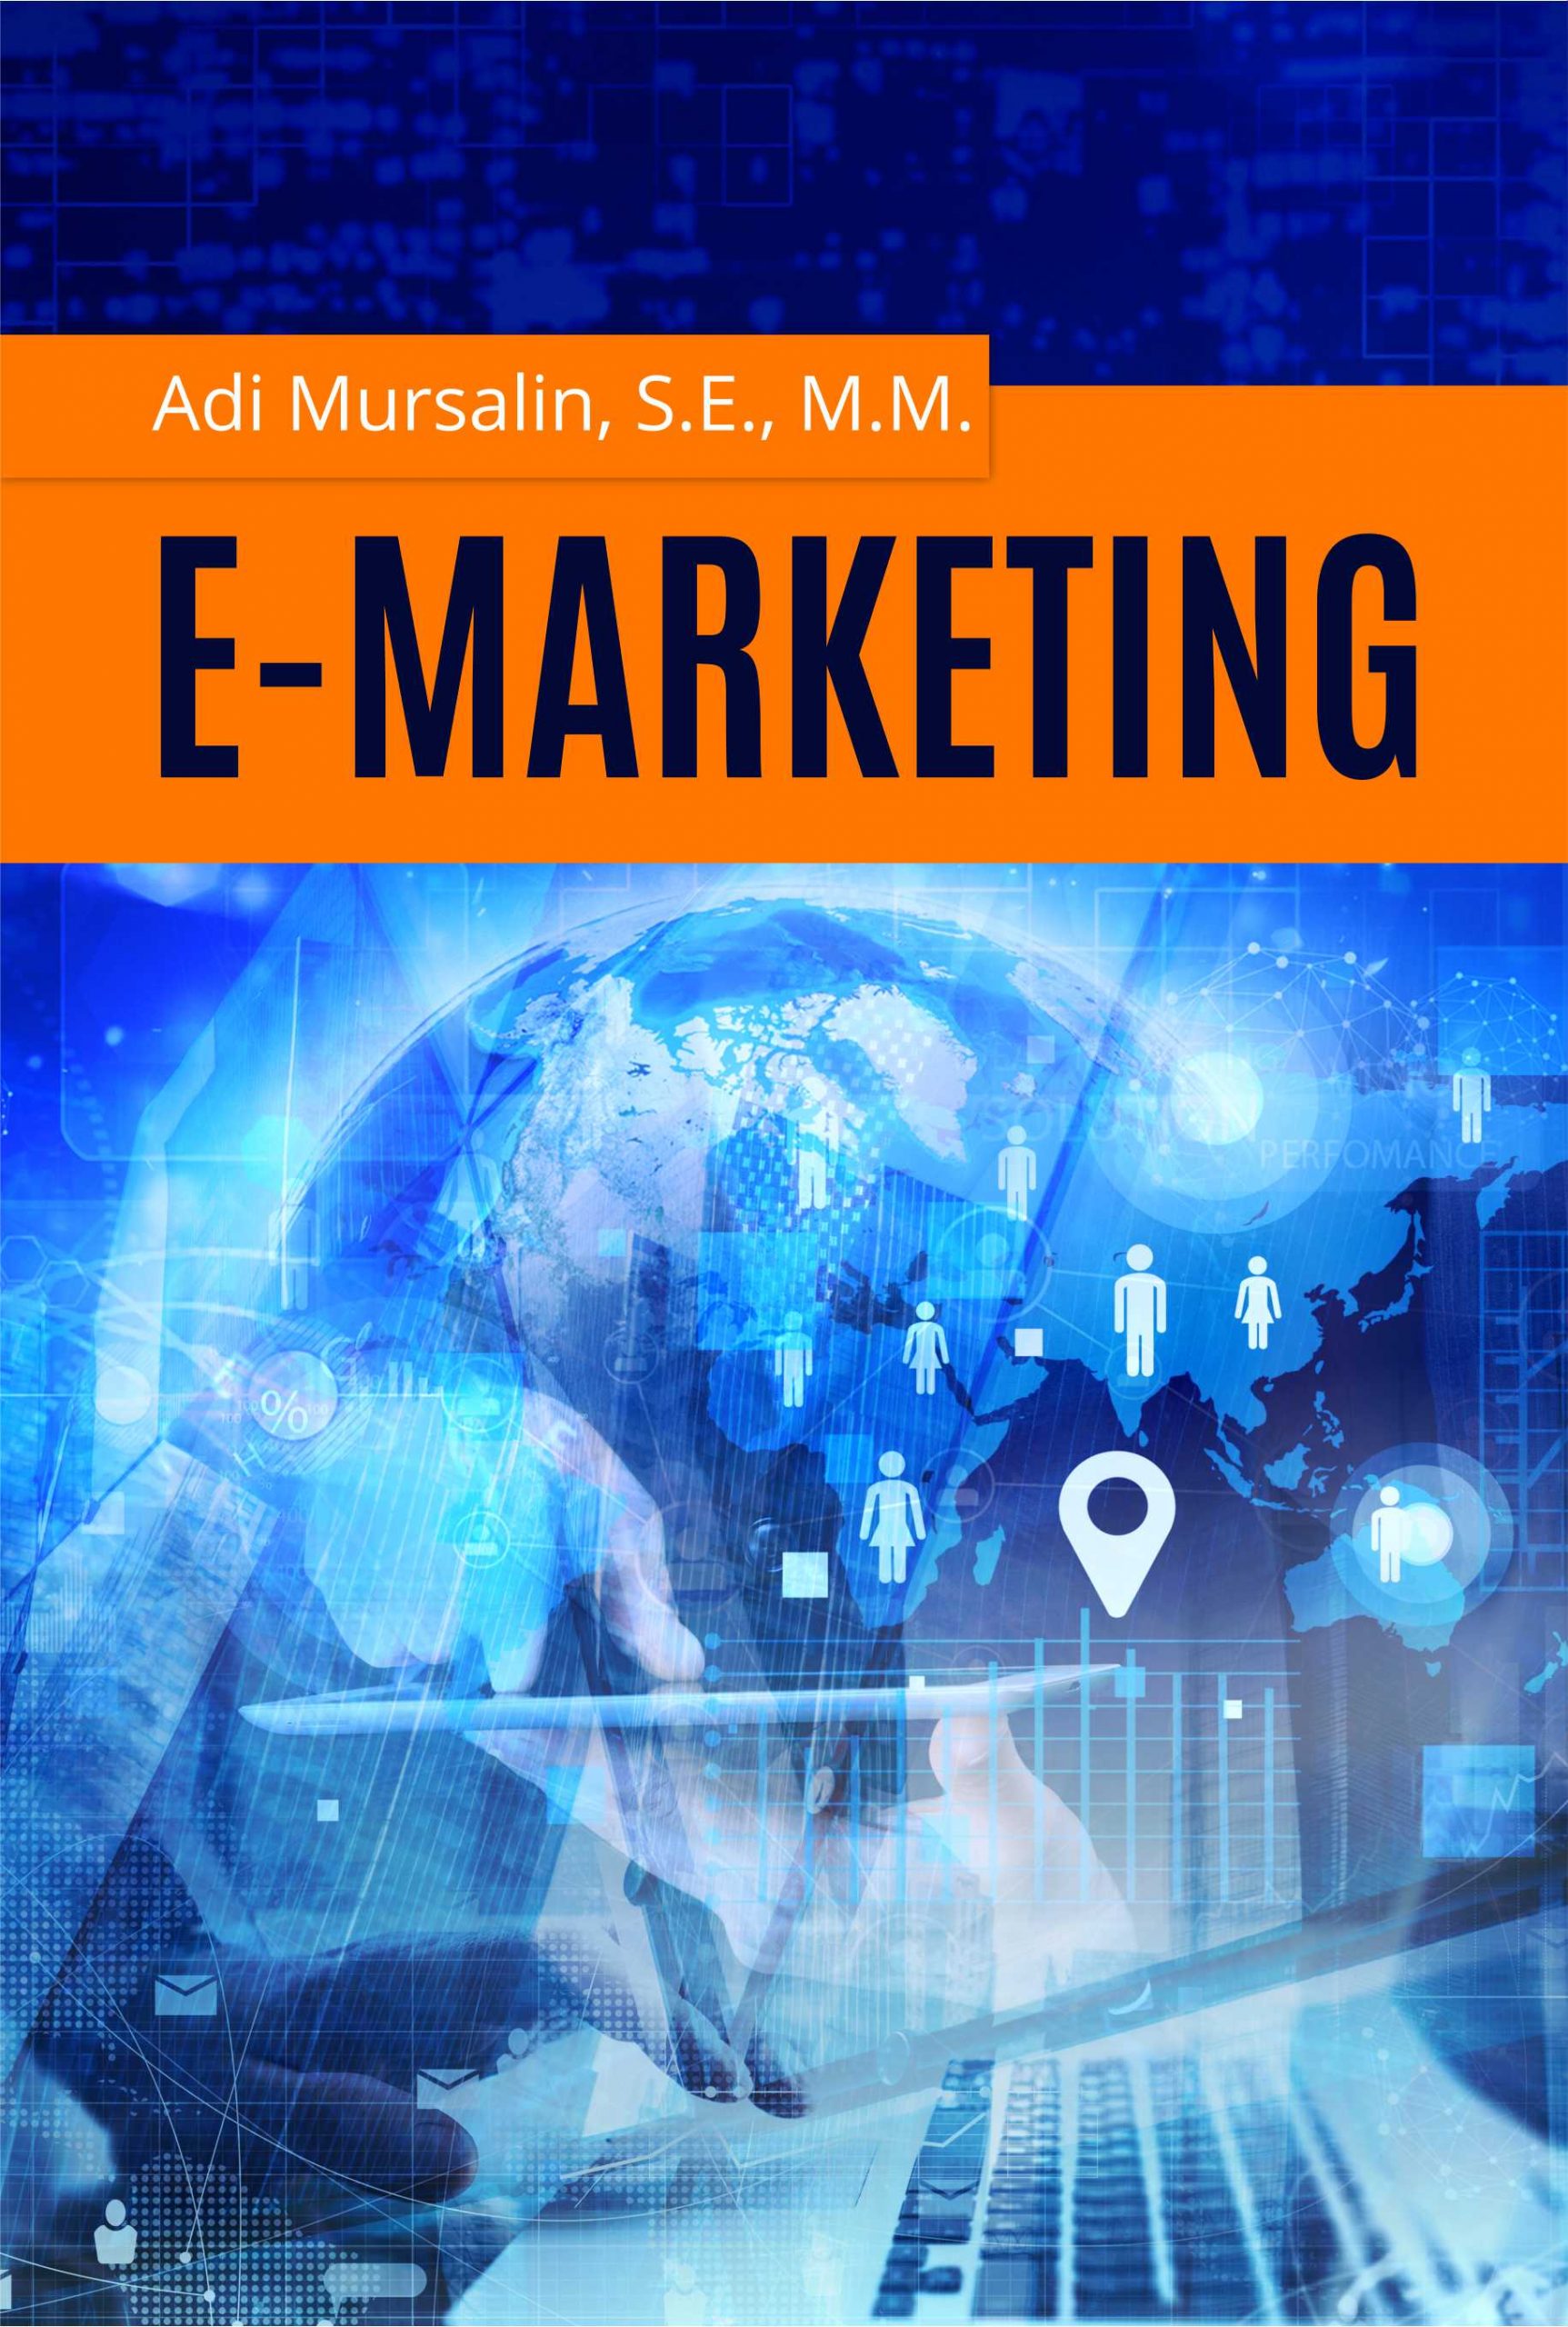 E-Marketing - Adi Mursalin